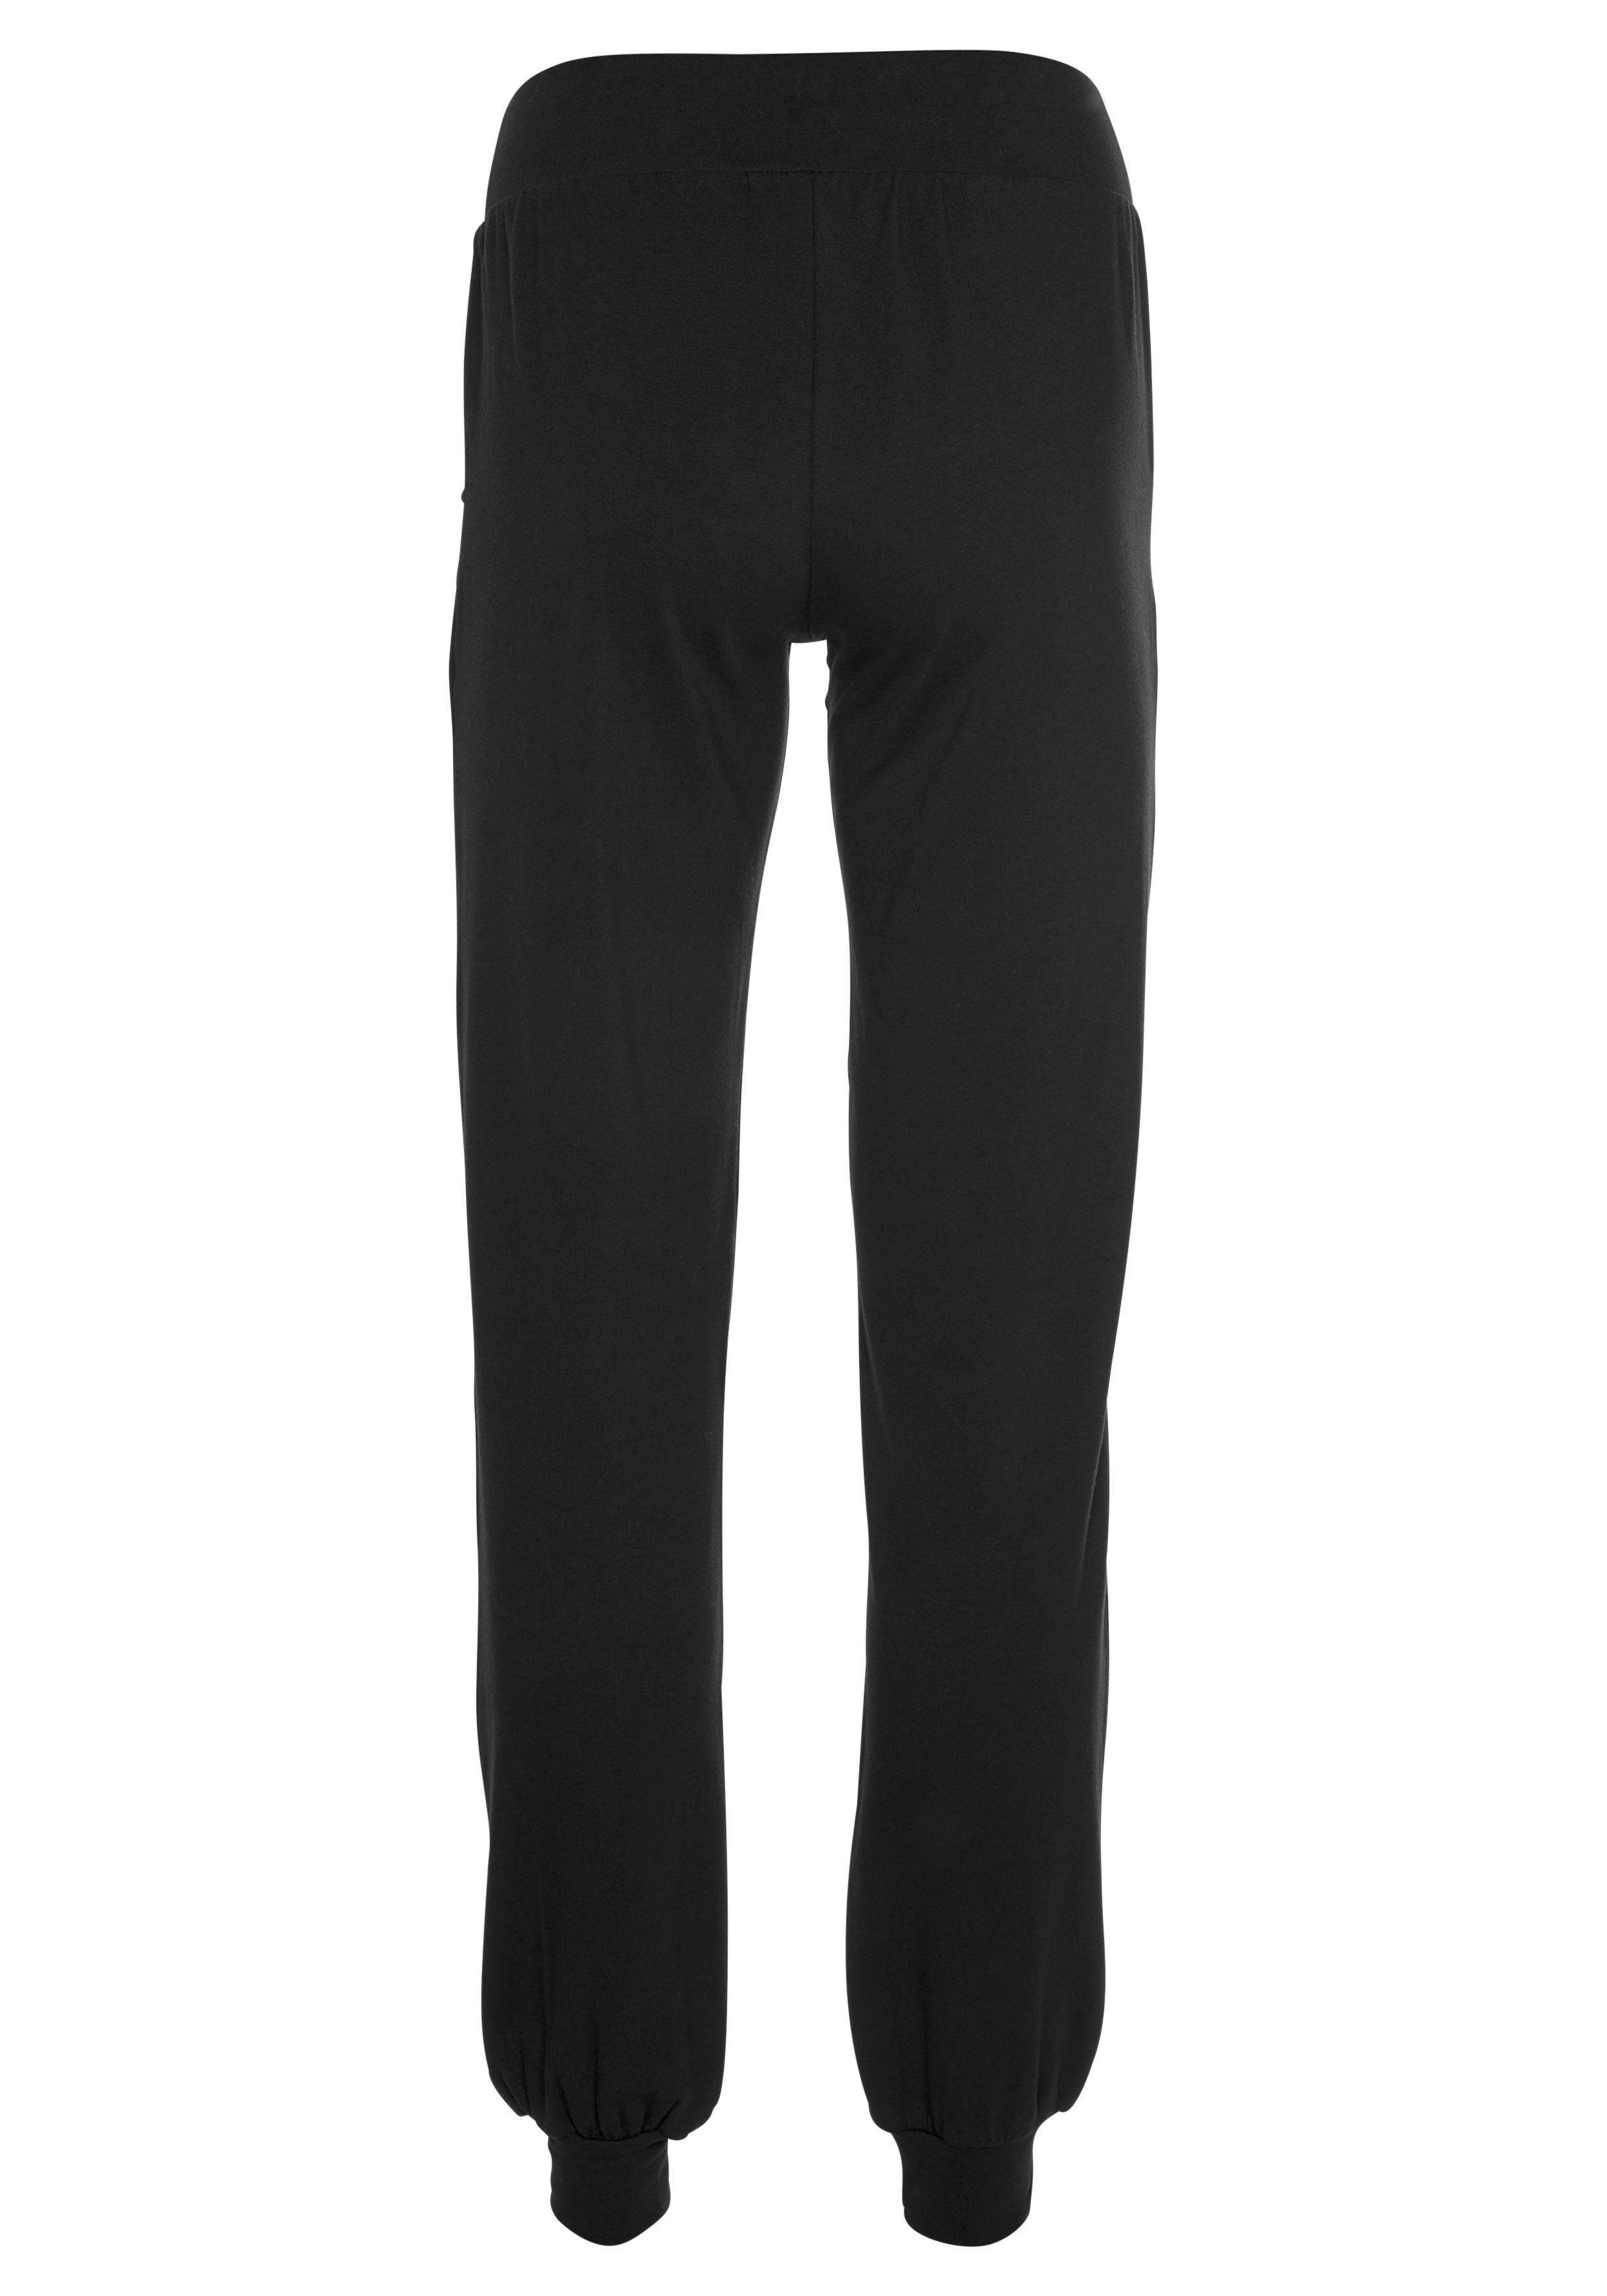 Loose schwarz Yogahose Pants & Soulwear Sportswear - Yoga - Ocean Relax Fit